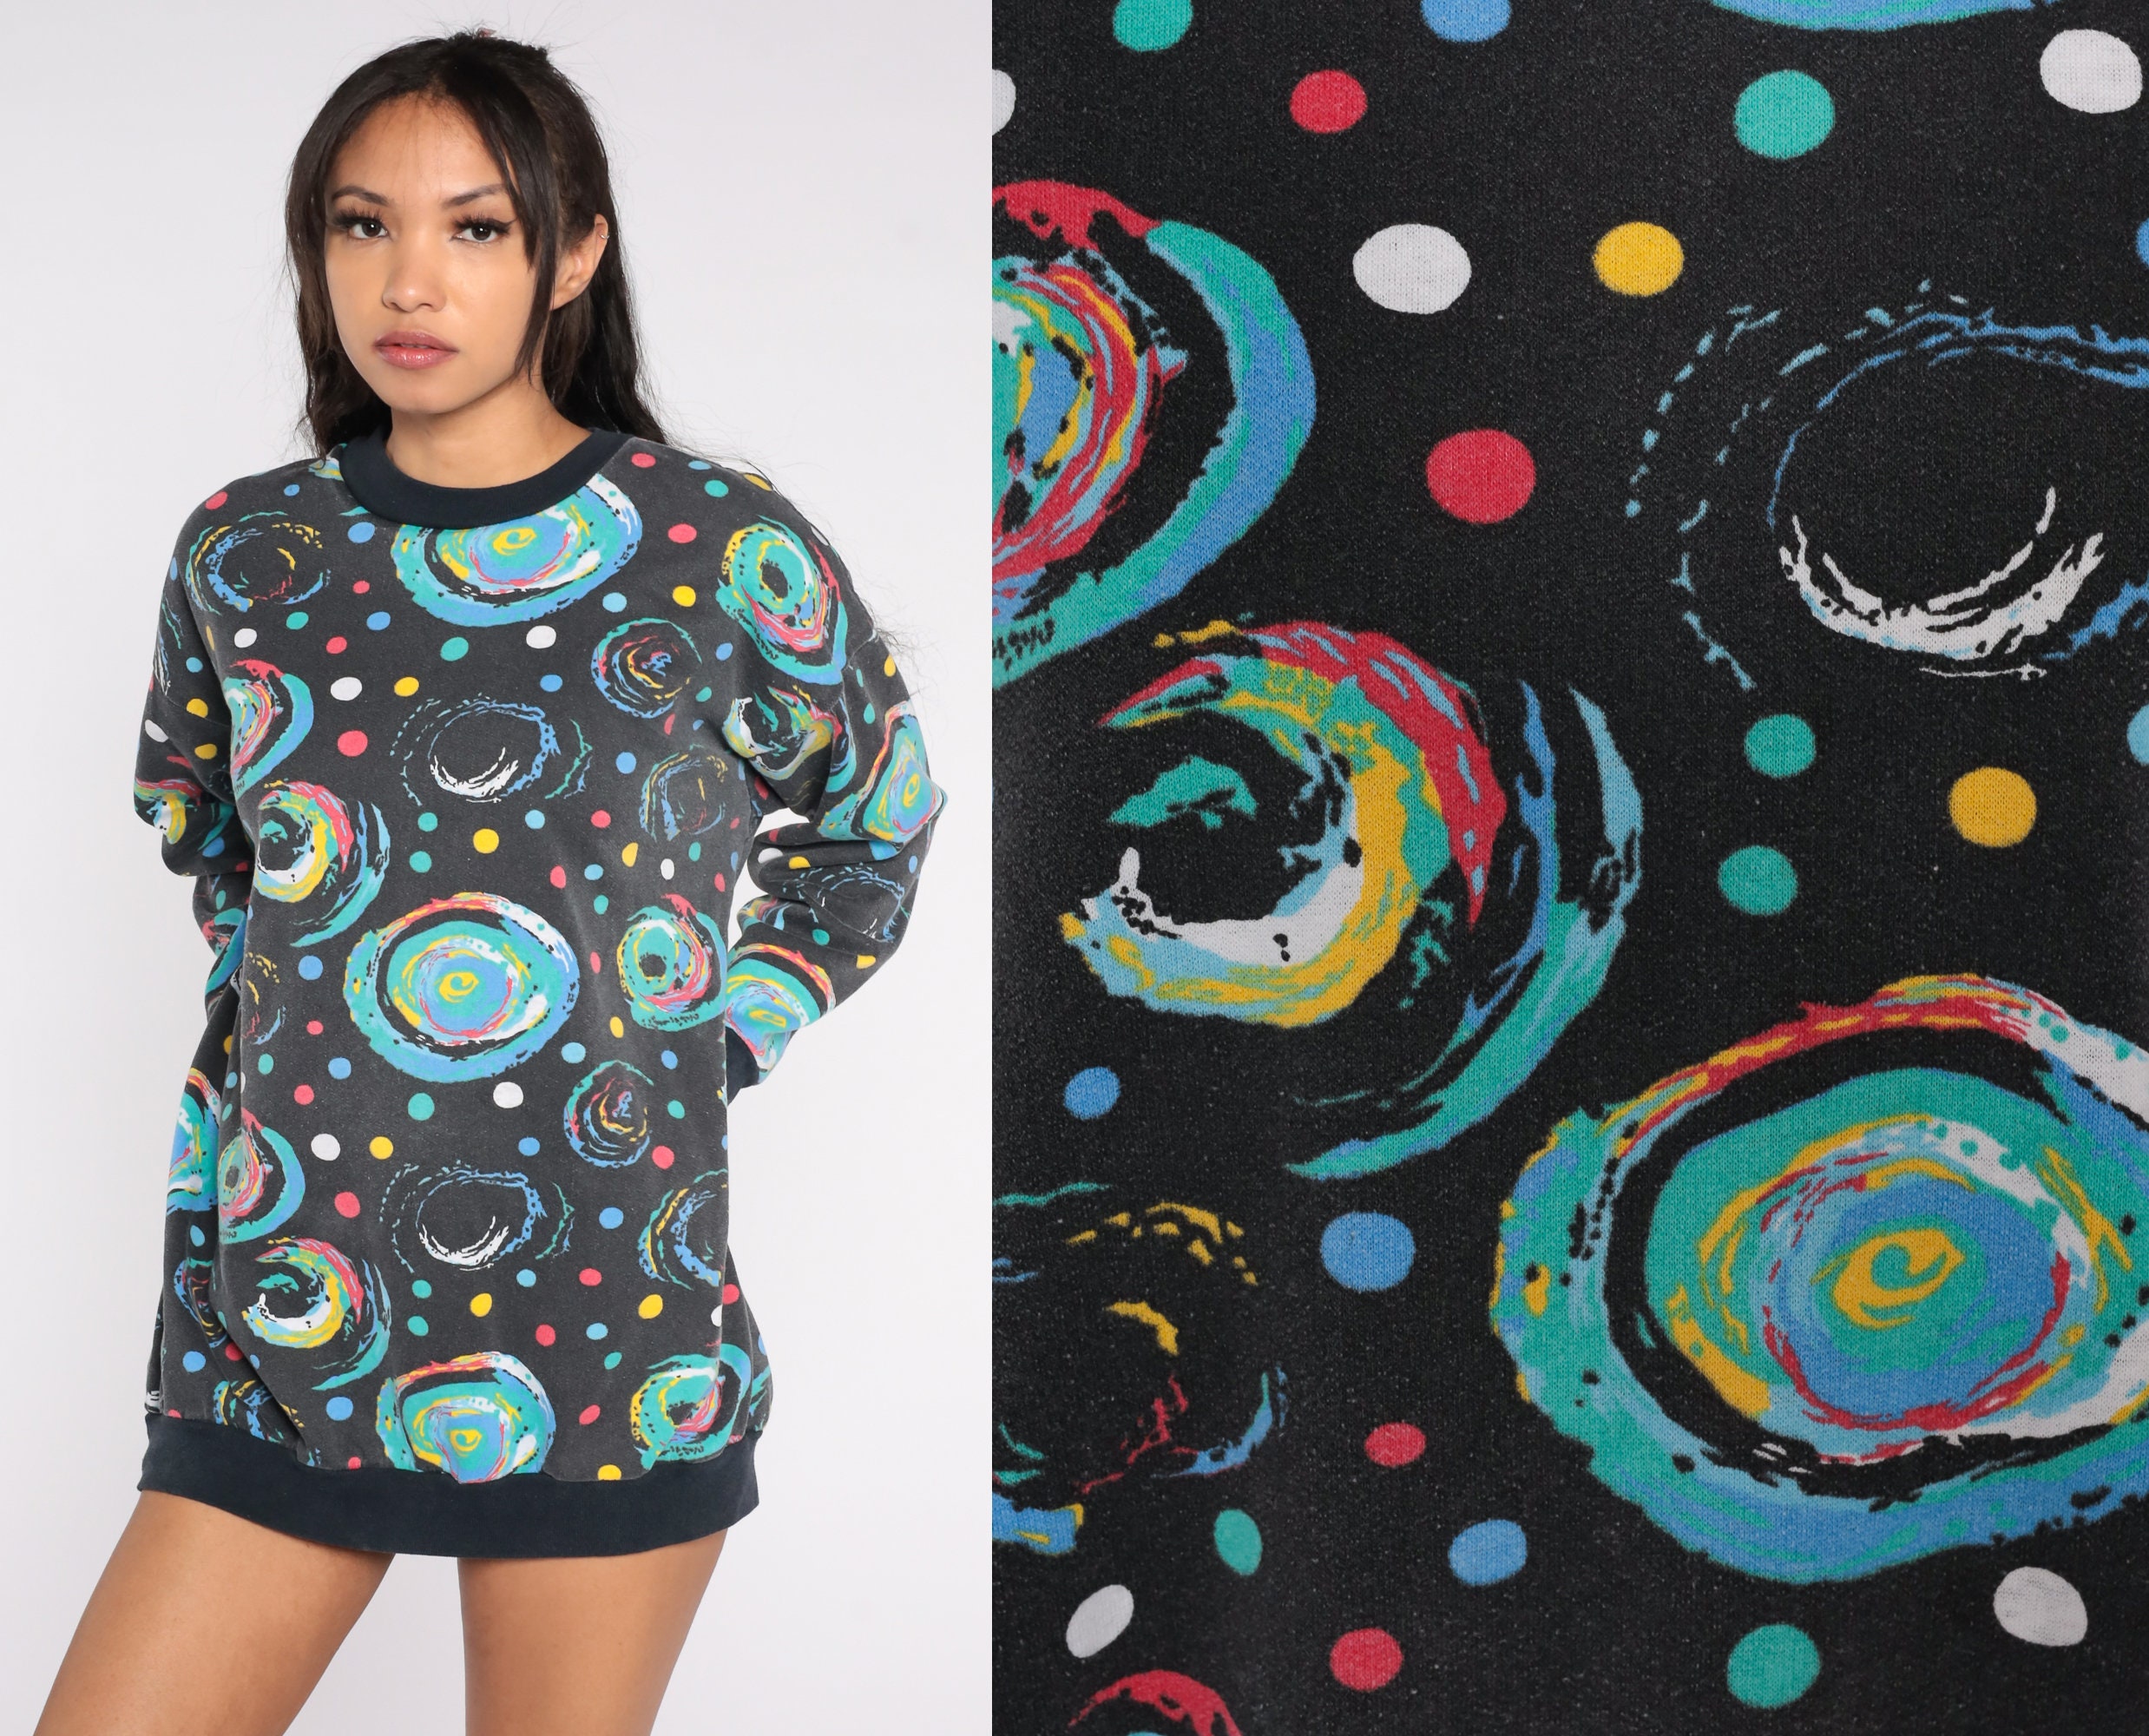 Cosmic Sweatshirt 90s Black Abstract Sweatshirt Polka Dot Swirl Print ...